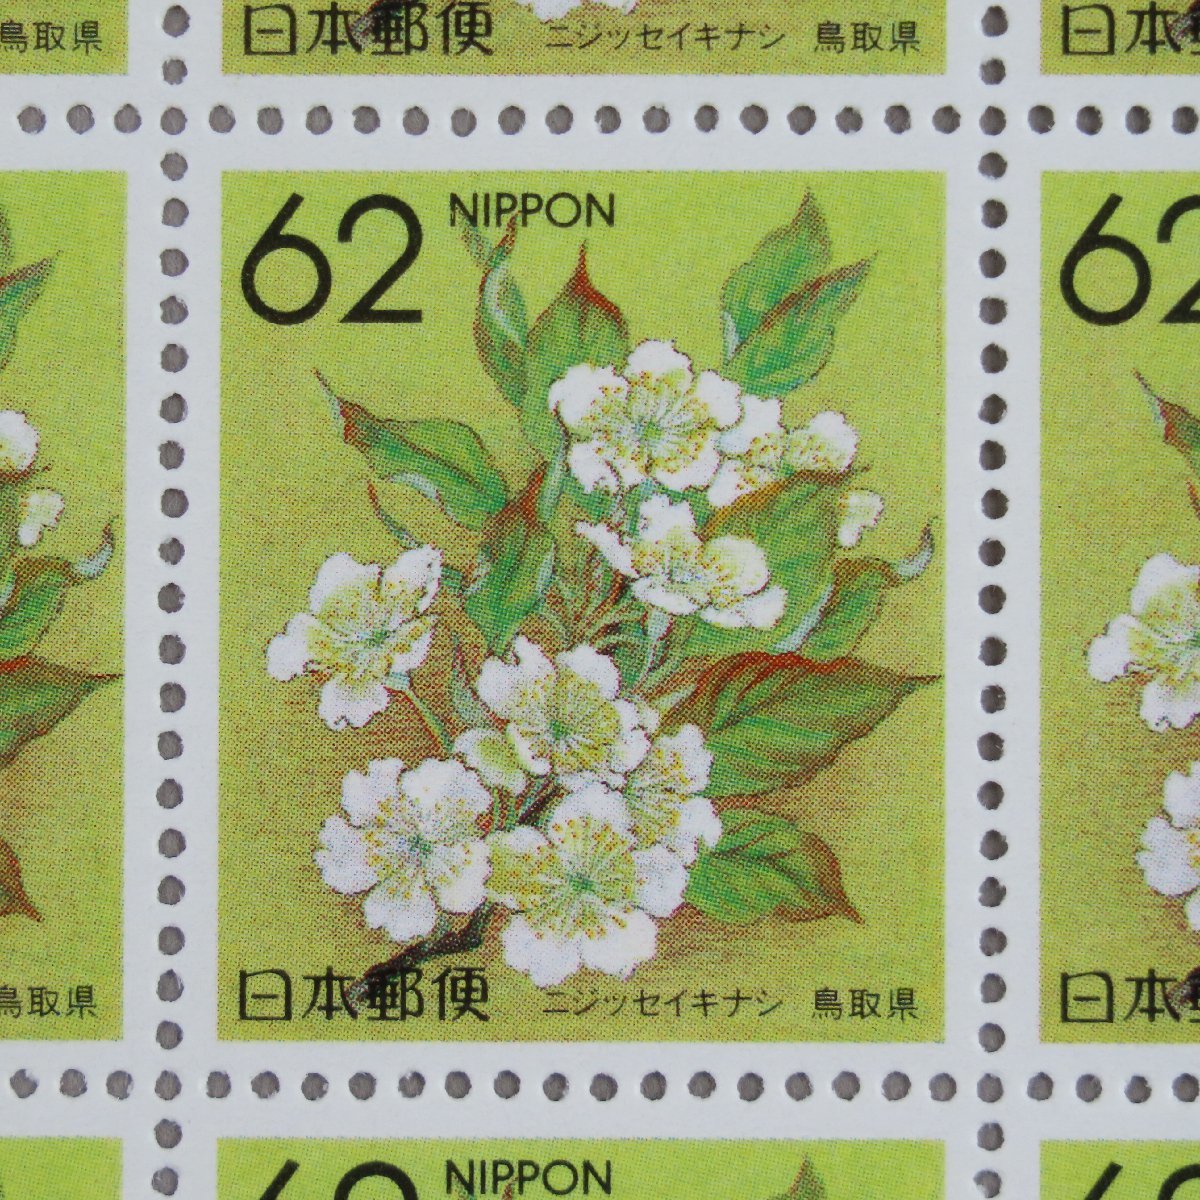 [ марка 1644] префектуральный цветок марки Furusato niji era нет ( Tottori префектура ) China -4 2 10 век груша 62 иен 20 поверхность 1 сиденье 